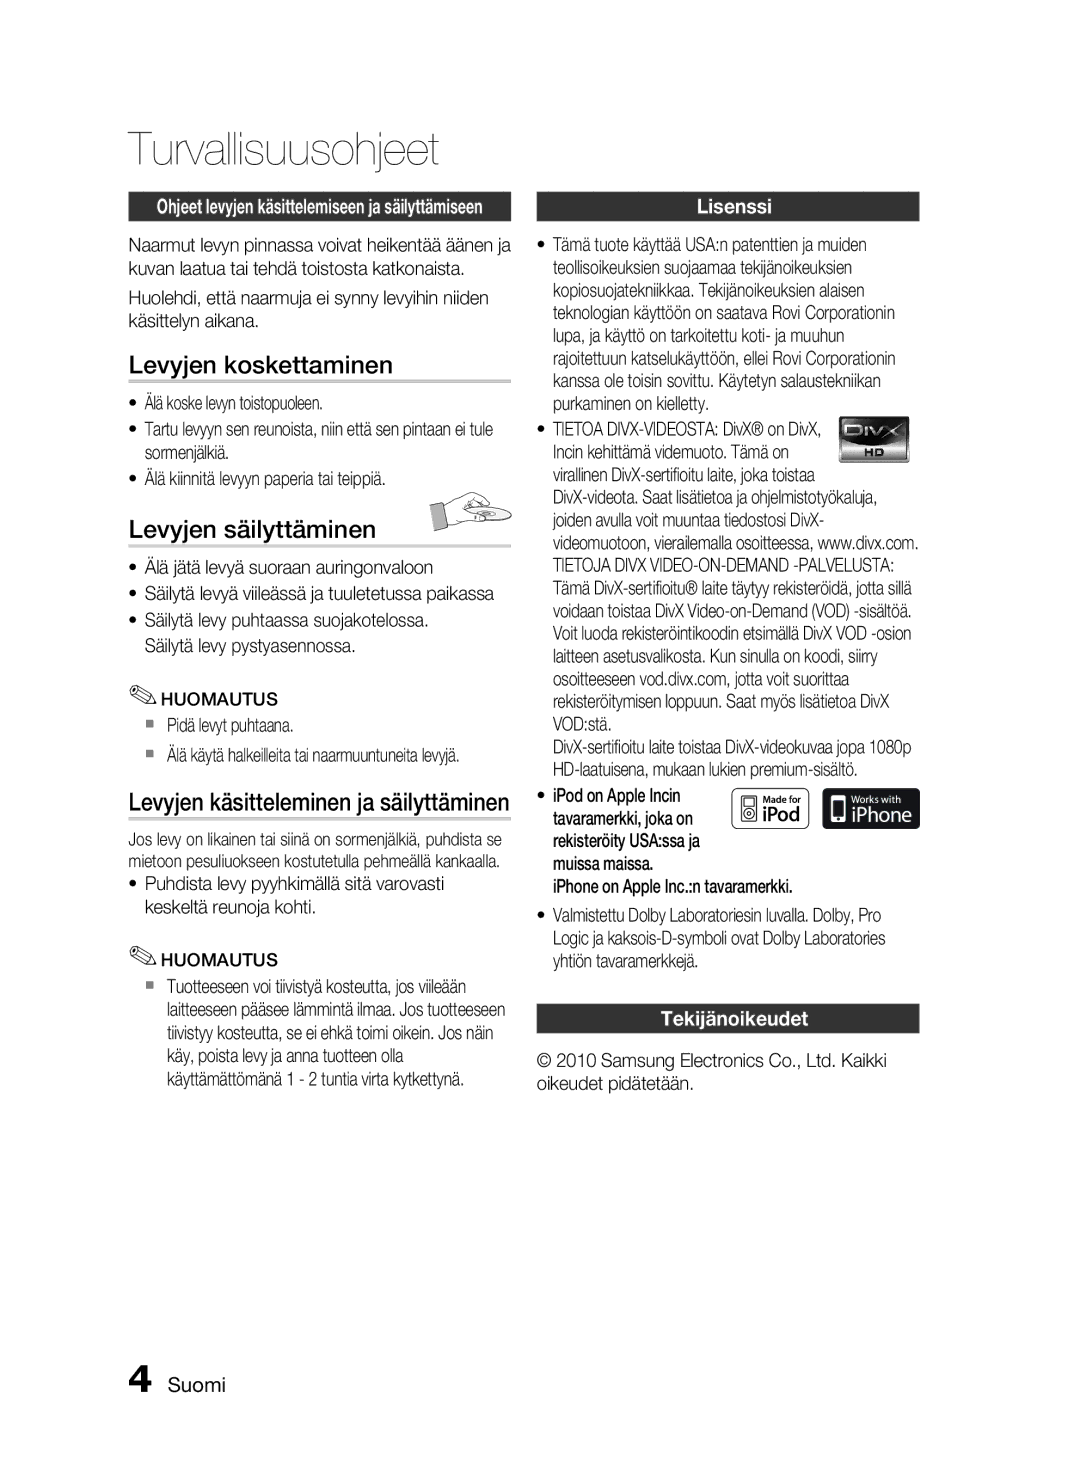 Samsung HT-C6500/XEE manual Levyjen koskettaminen, Levyjen säilyttäminen, Lisenssi, Tekijänoikeudet, Huomautus 